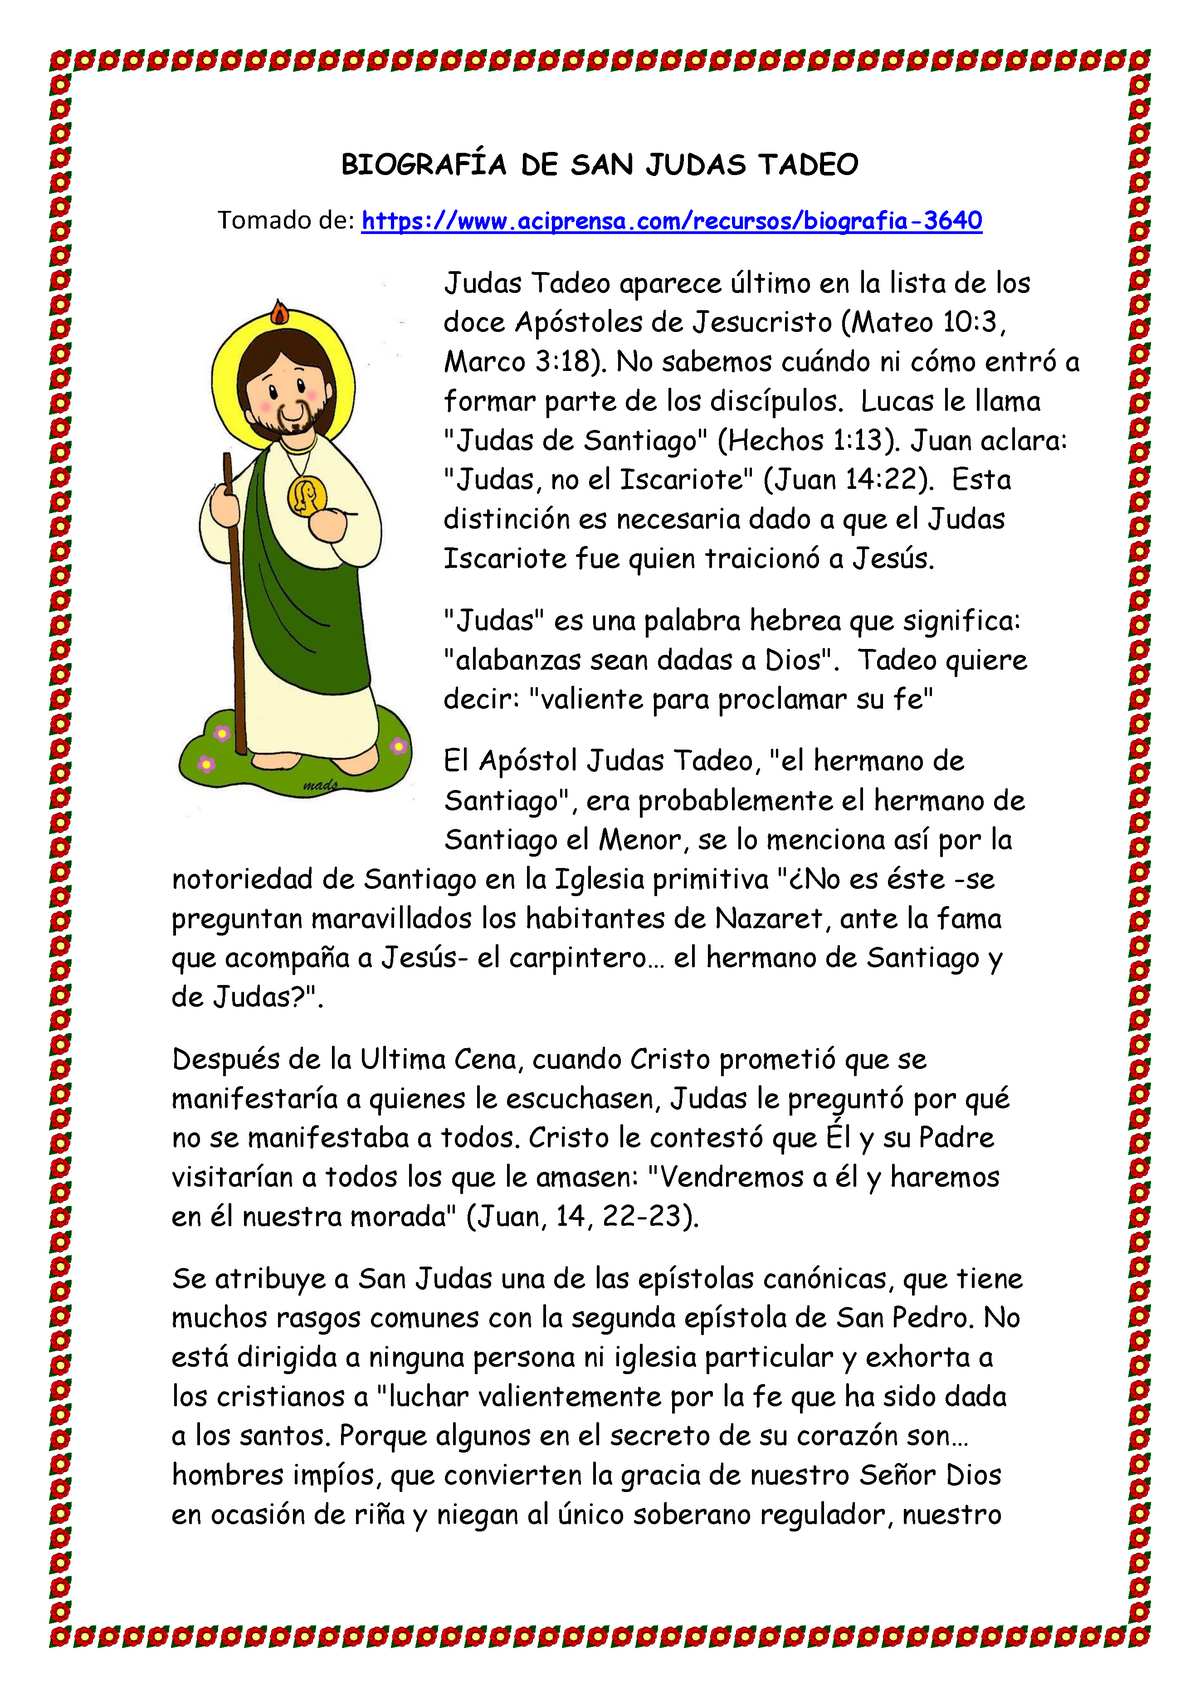 San Judas Tadeo: 7 datos que tal vez no conocías de su vida